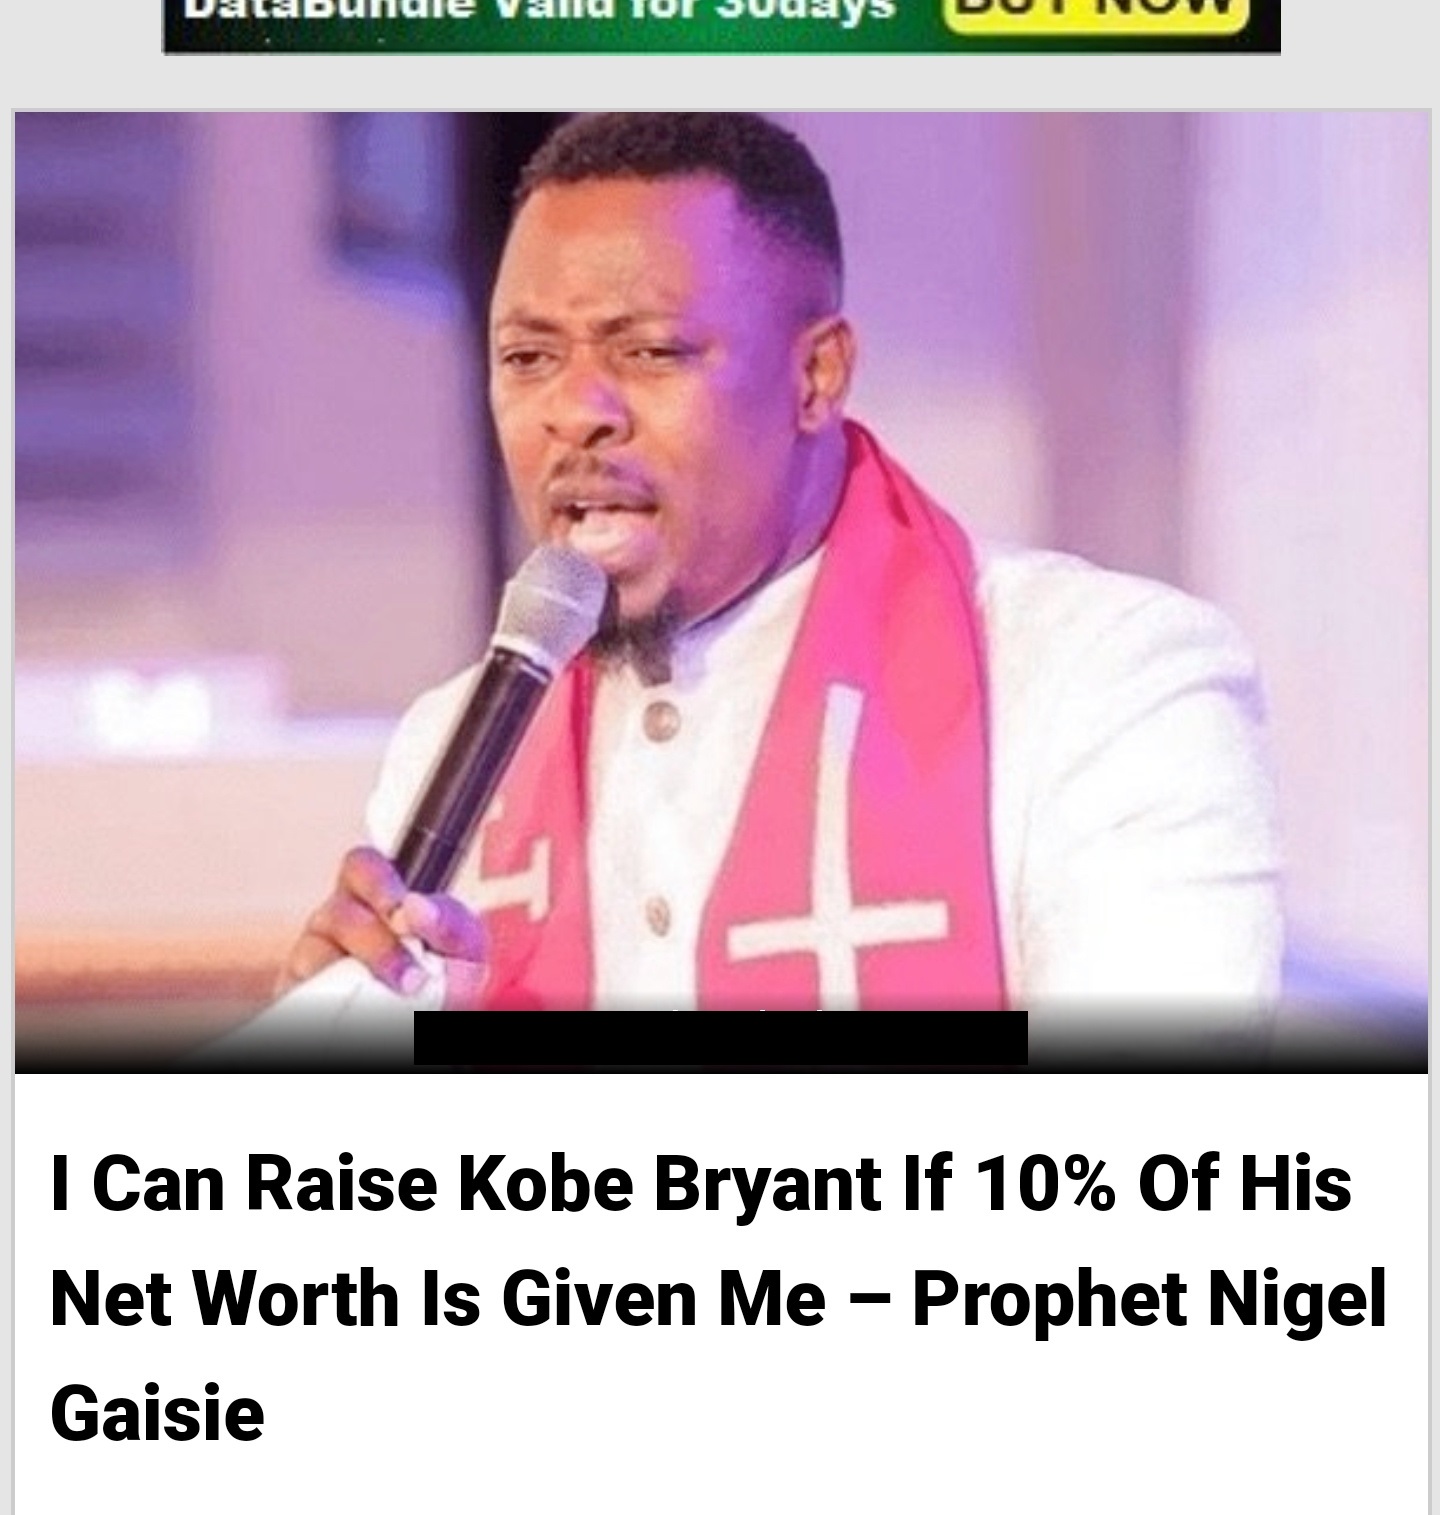 prophet nigel gaisie new - Utbullule valid for Subays I Can Raise Kobe Bryant If 10% Of His Net Worth Is Given Me Prophet Nigel Gaisie